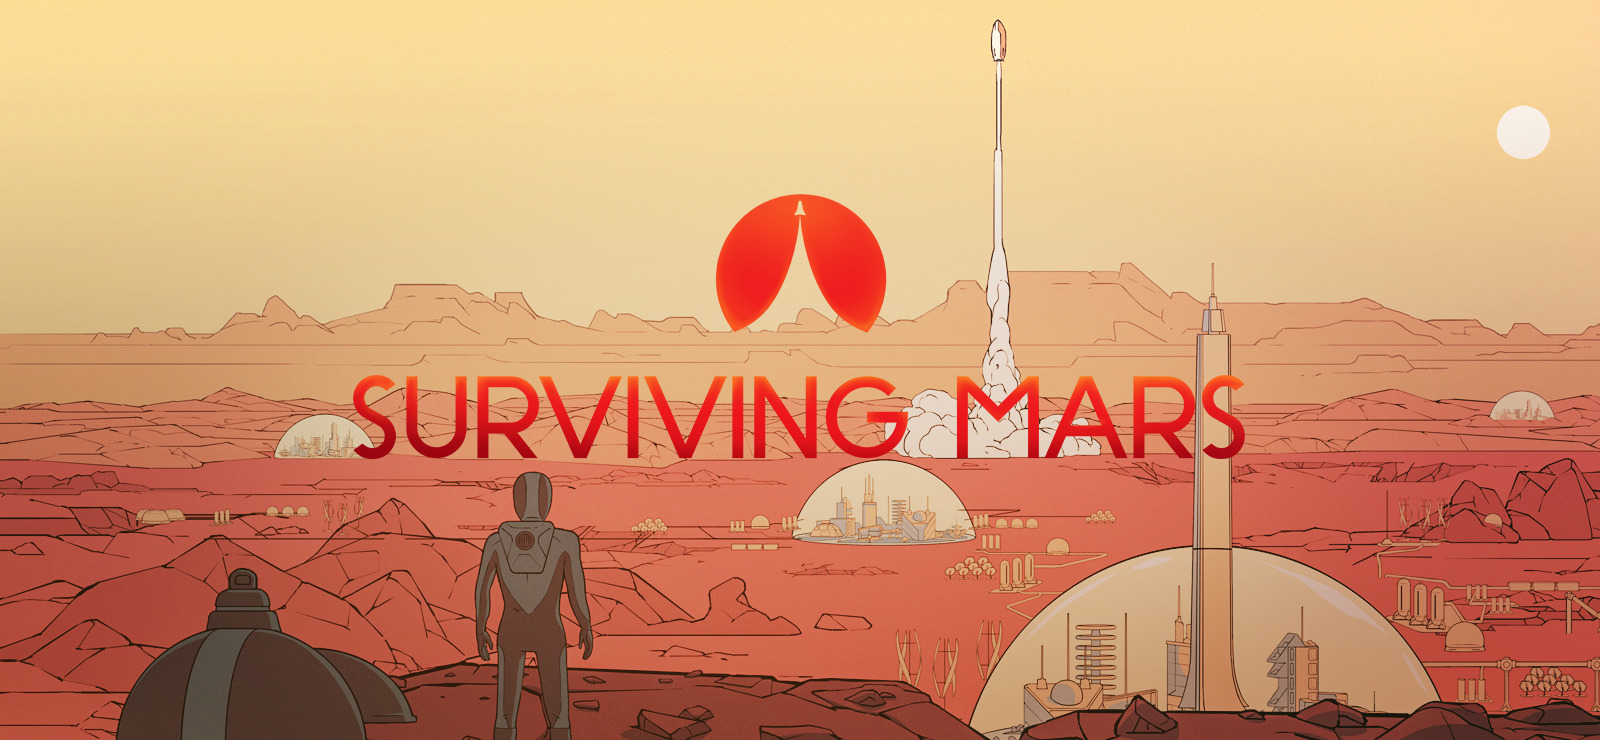 Survivng Mars